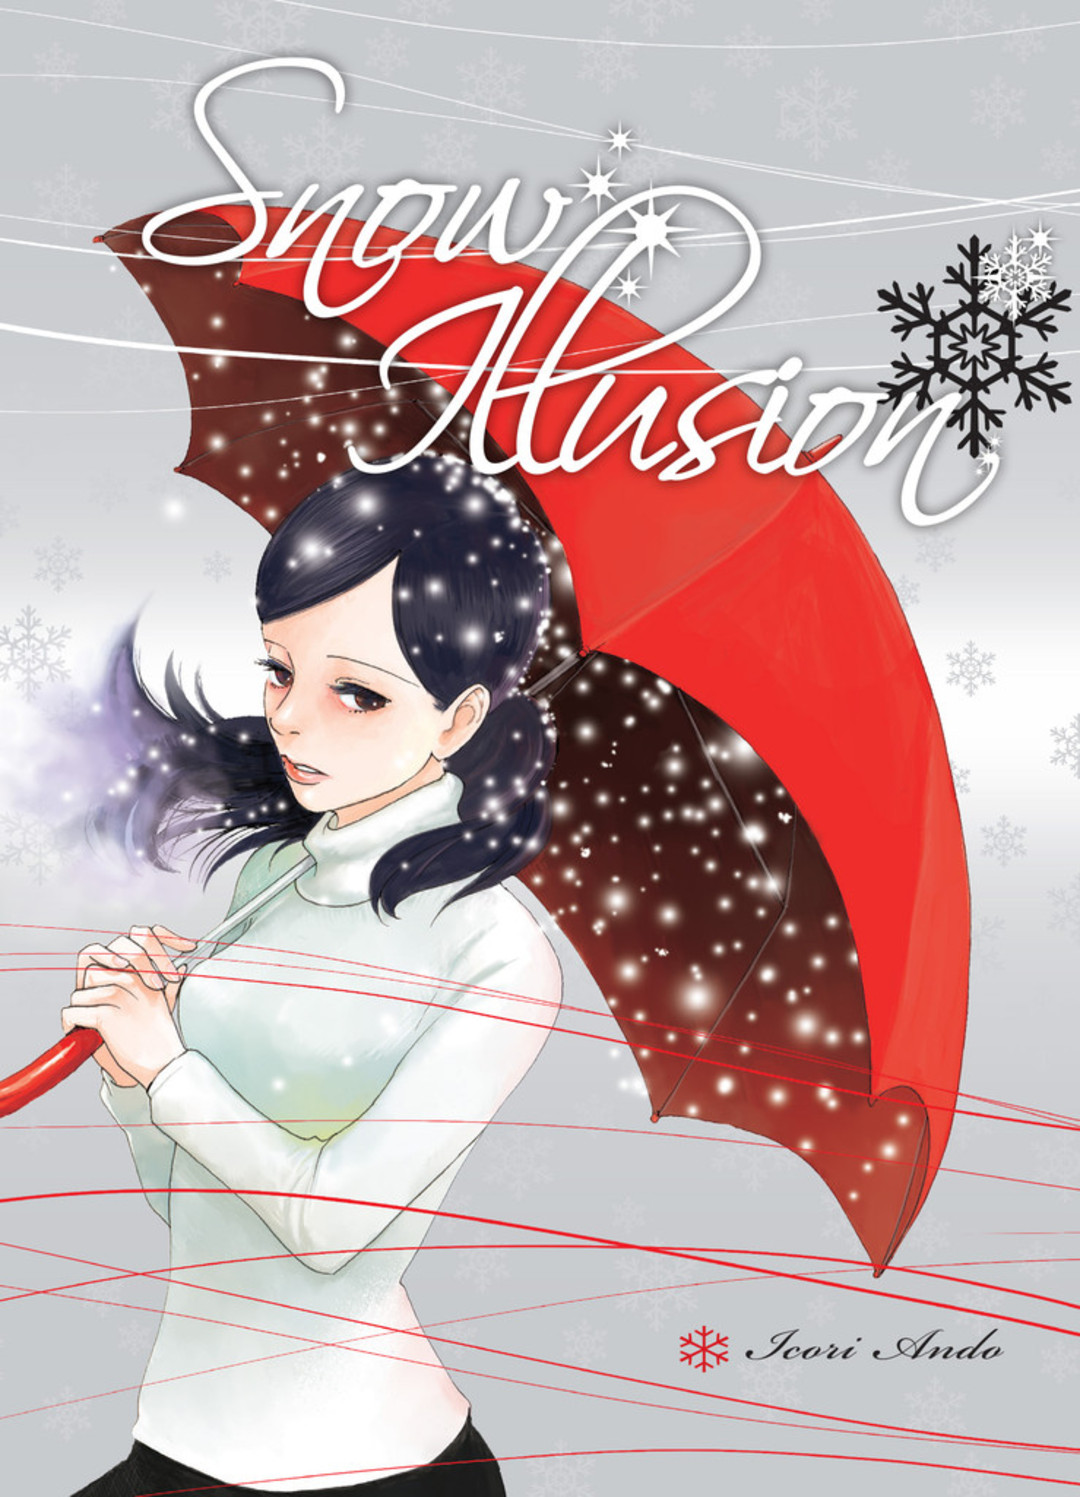 Snow Illusion - Komikku vient rafraichir votre (insérez saison de lecture ici)